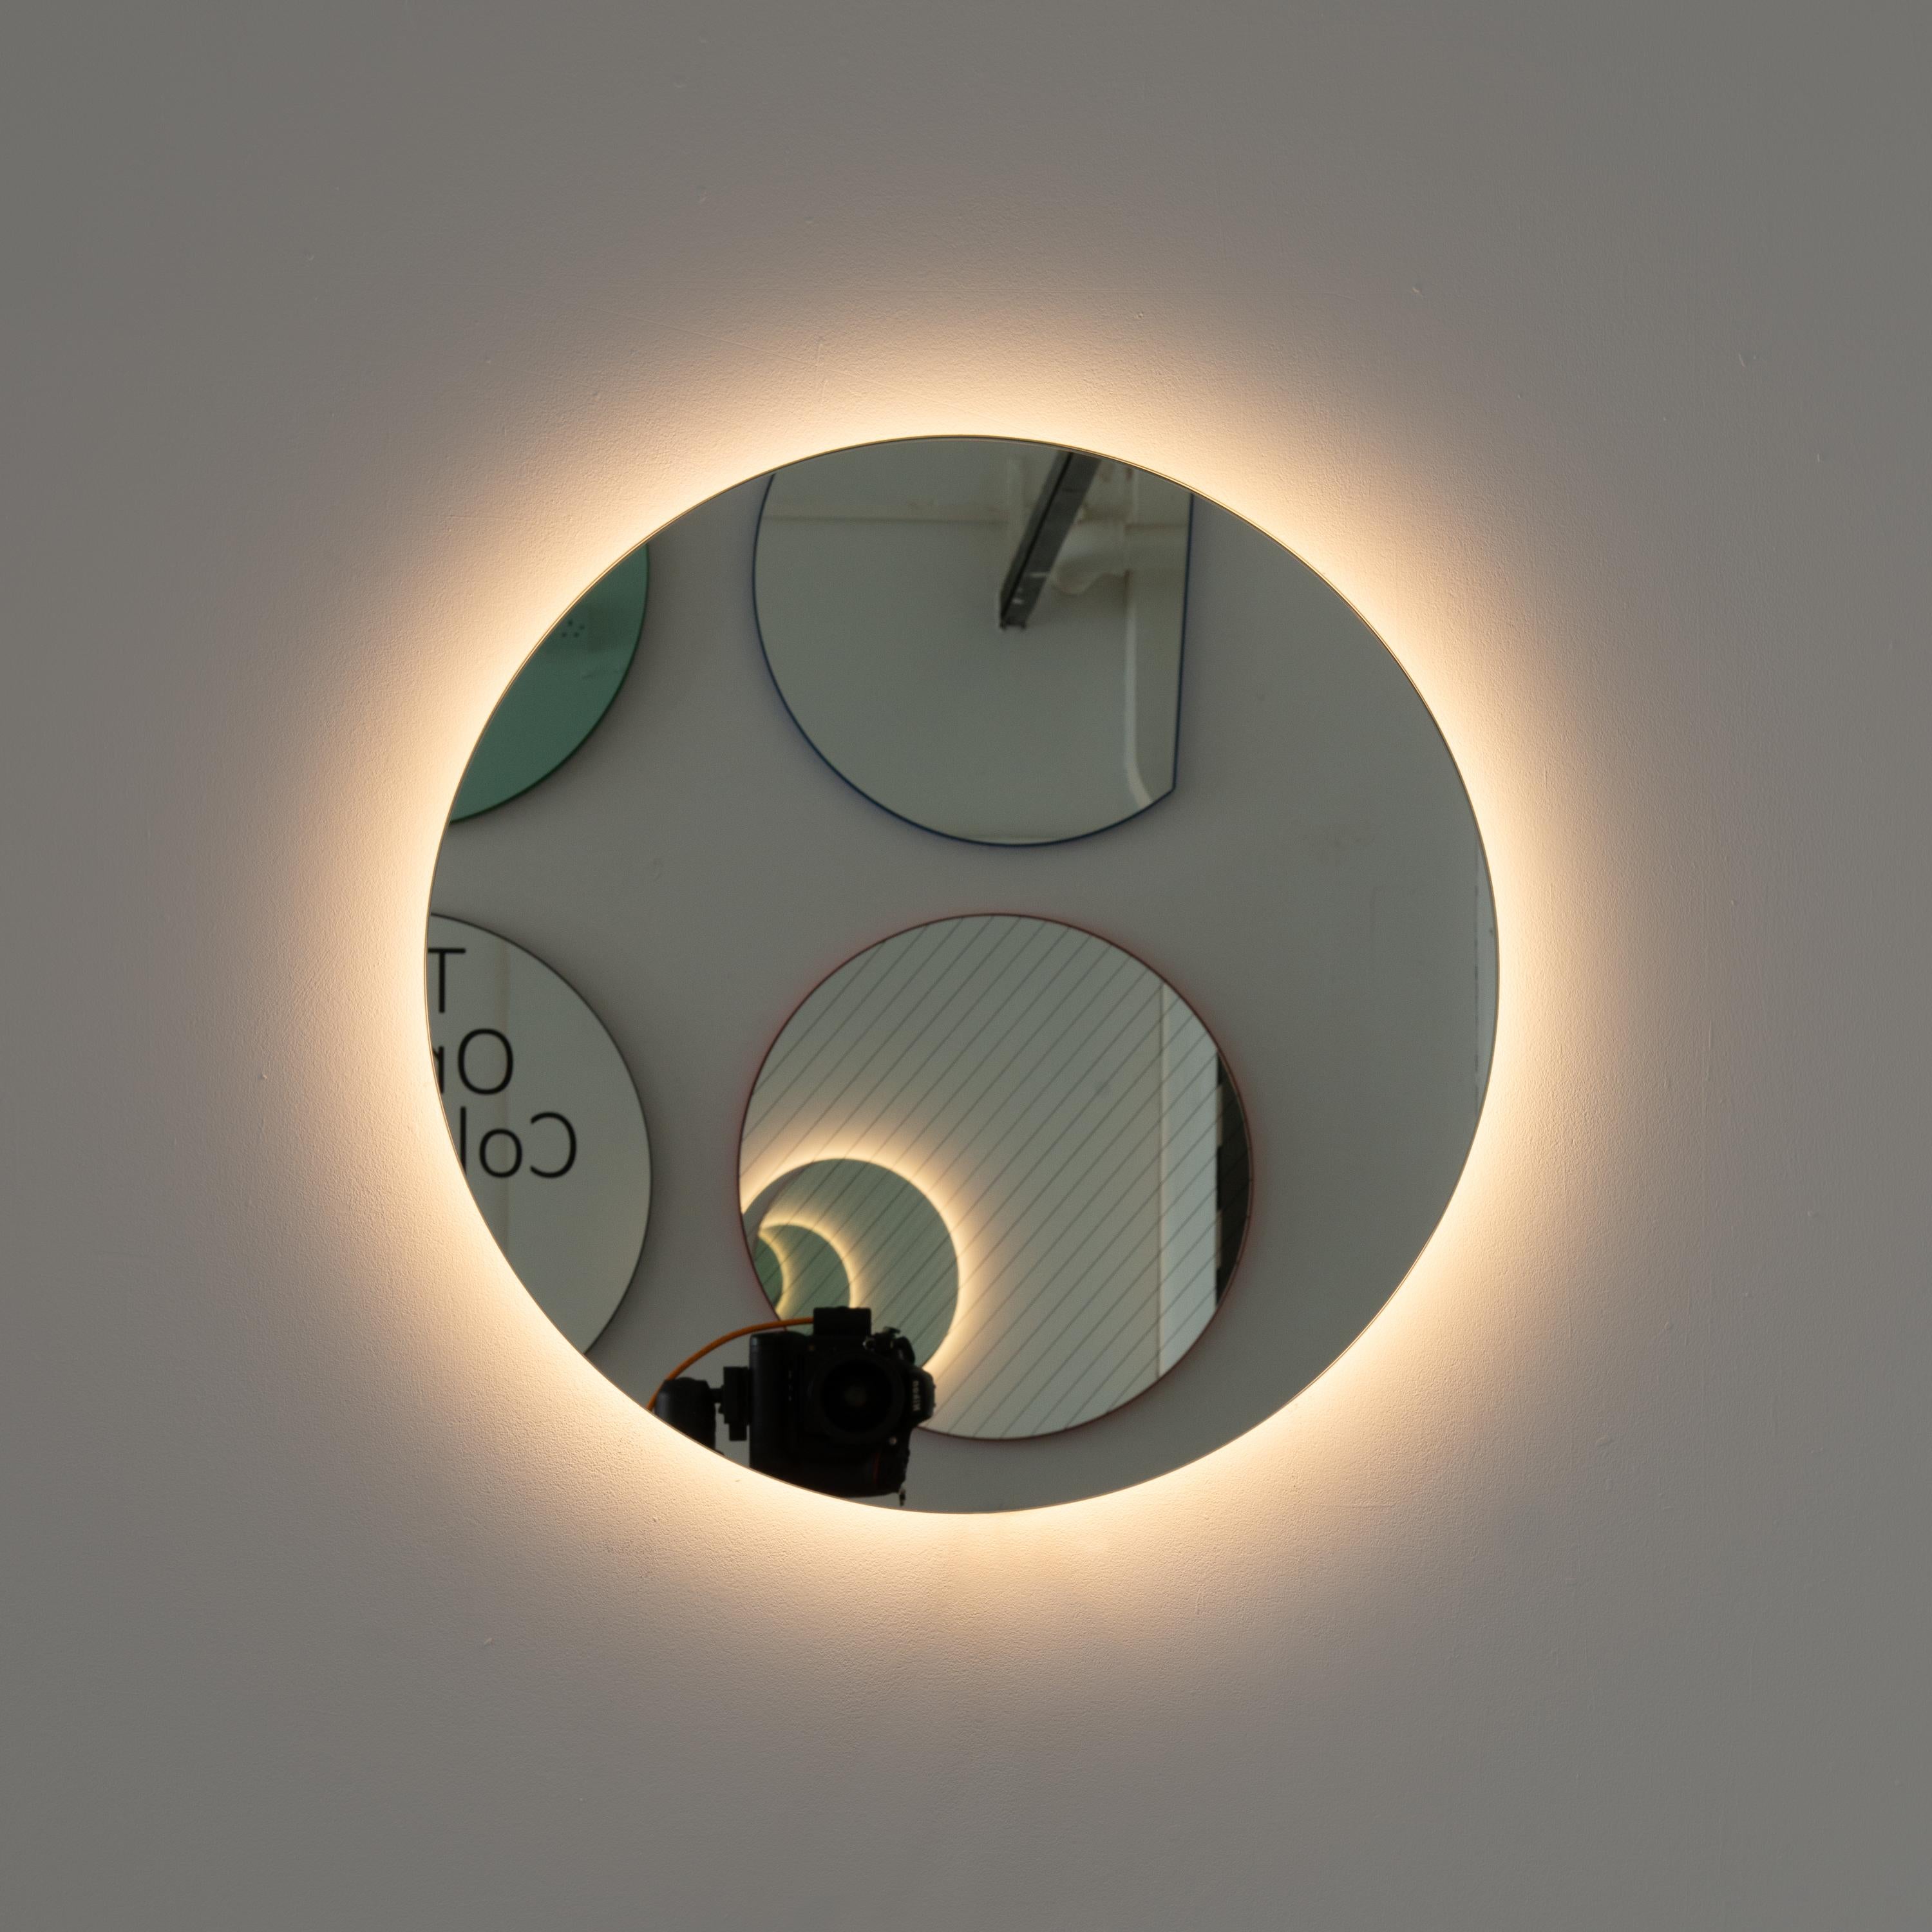 Miroir rond contemporain rétro-éclairé sans cadre avec un effet flottant. Un design de qualité qui garantit que le miroir est parfaitement parallèle au mur. Conçu et fabriqué à Londres, au Royaume-Uni.

Equipé de plaques professionnelles non